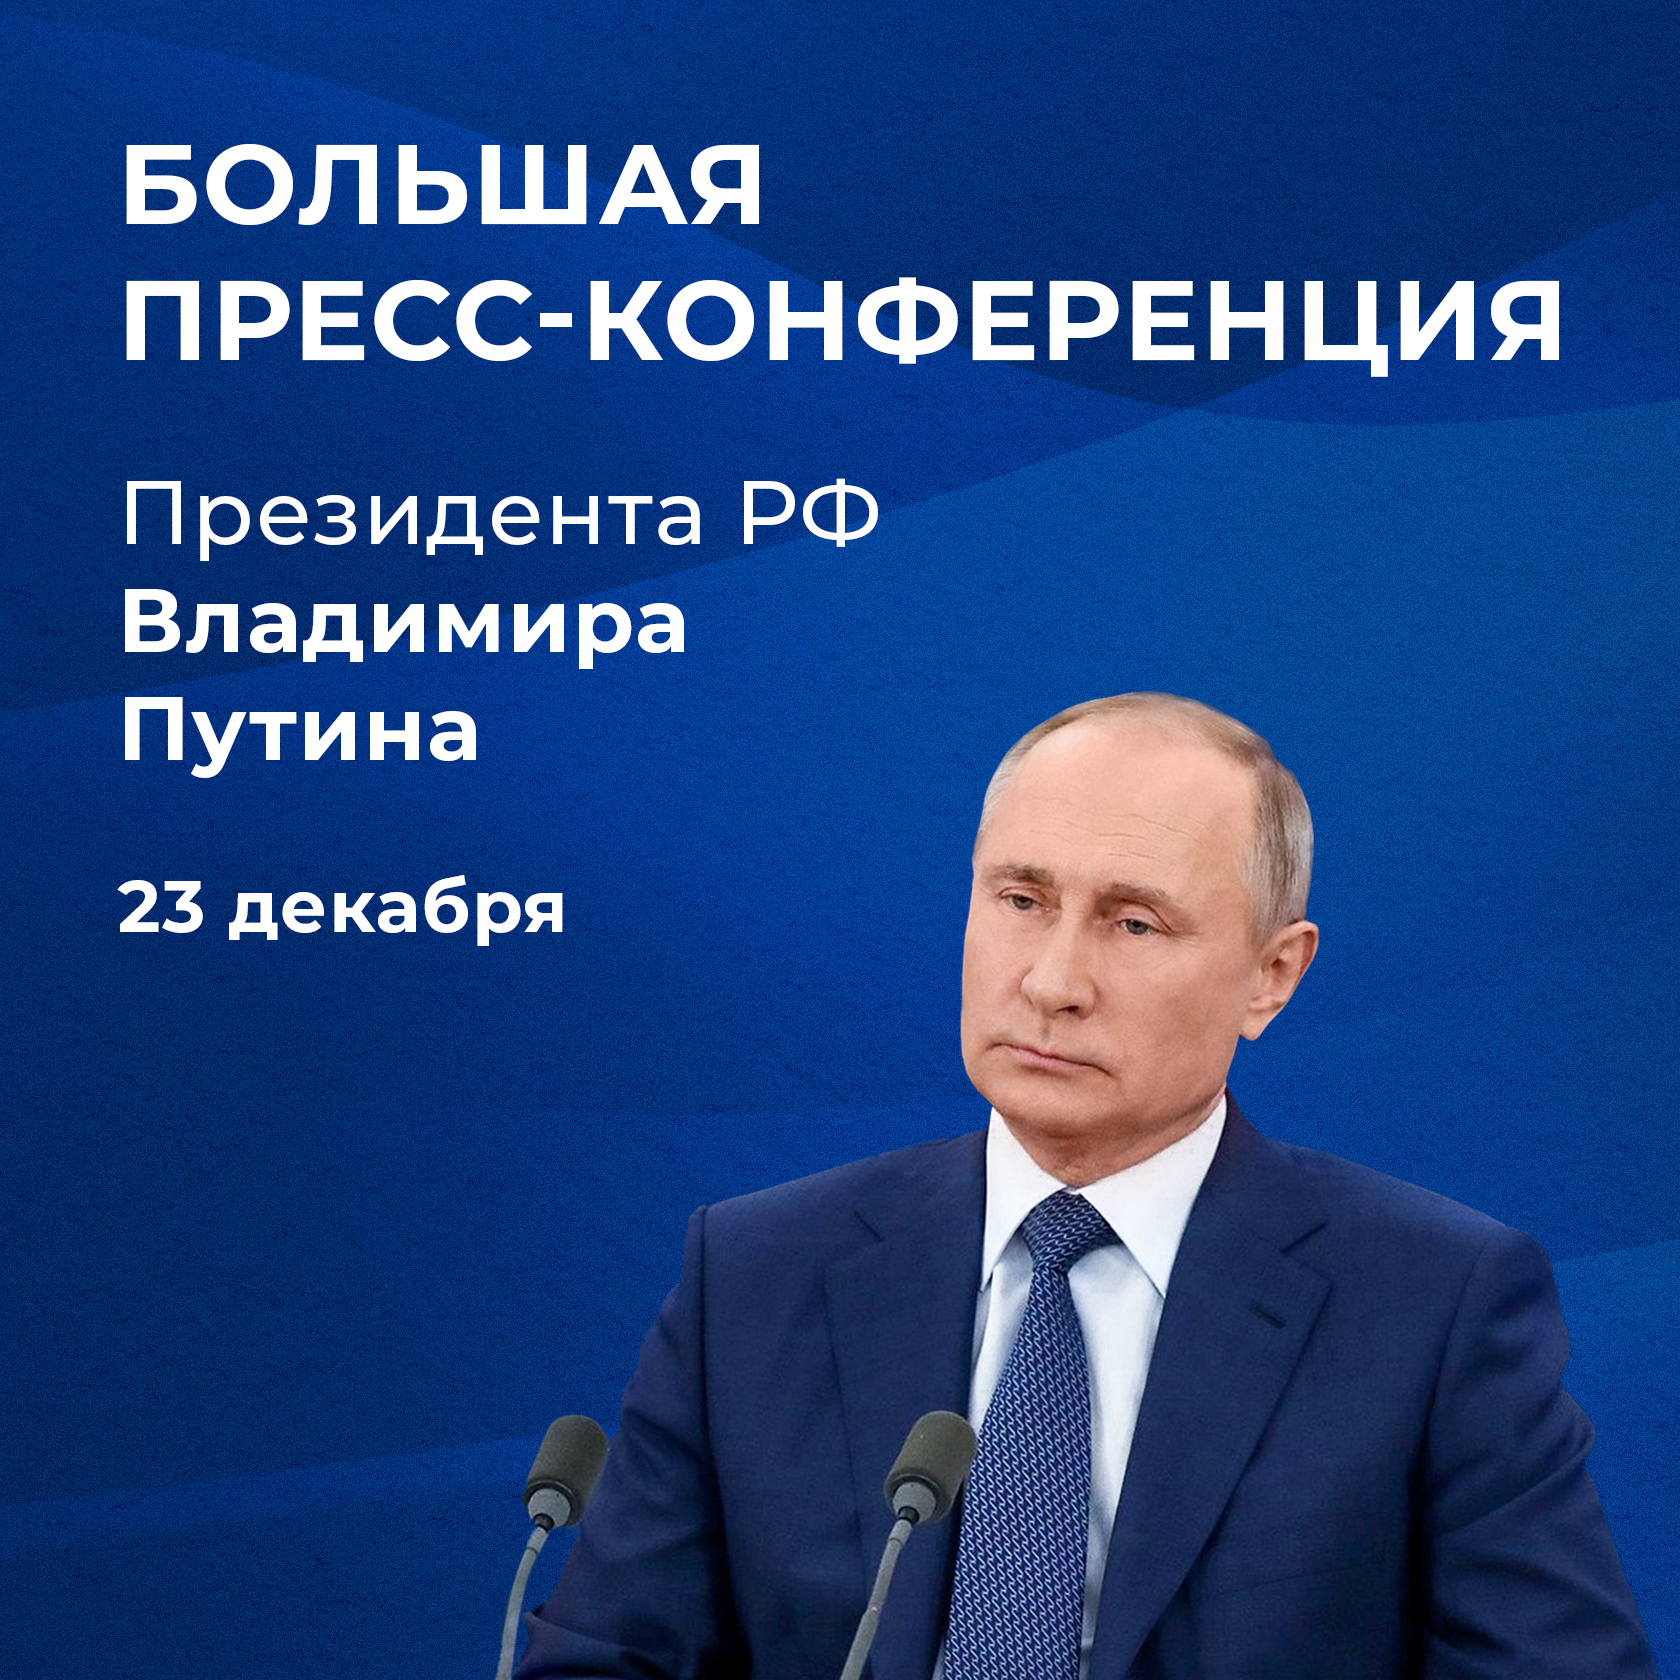 Владимир Путин подвел итоги года на традиционной пресс-конференции